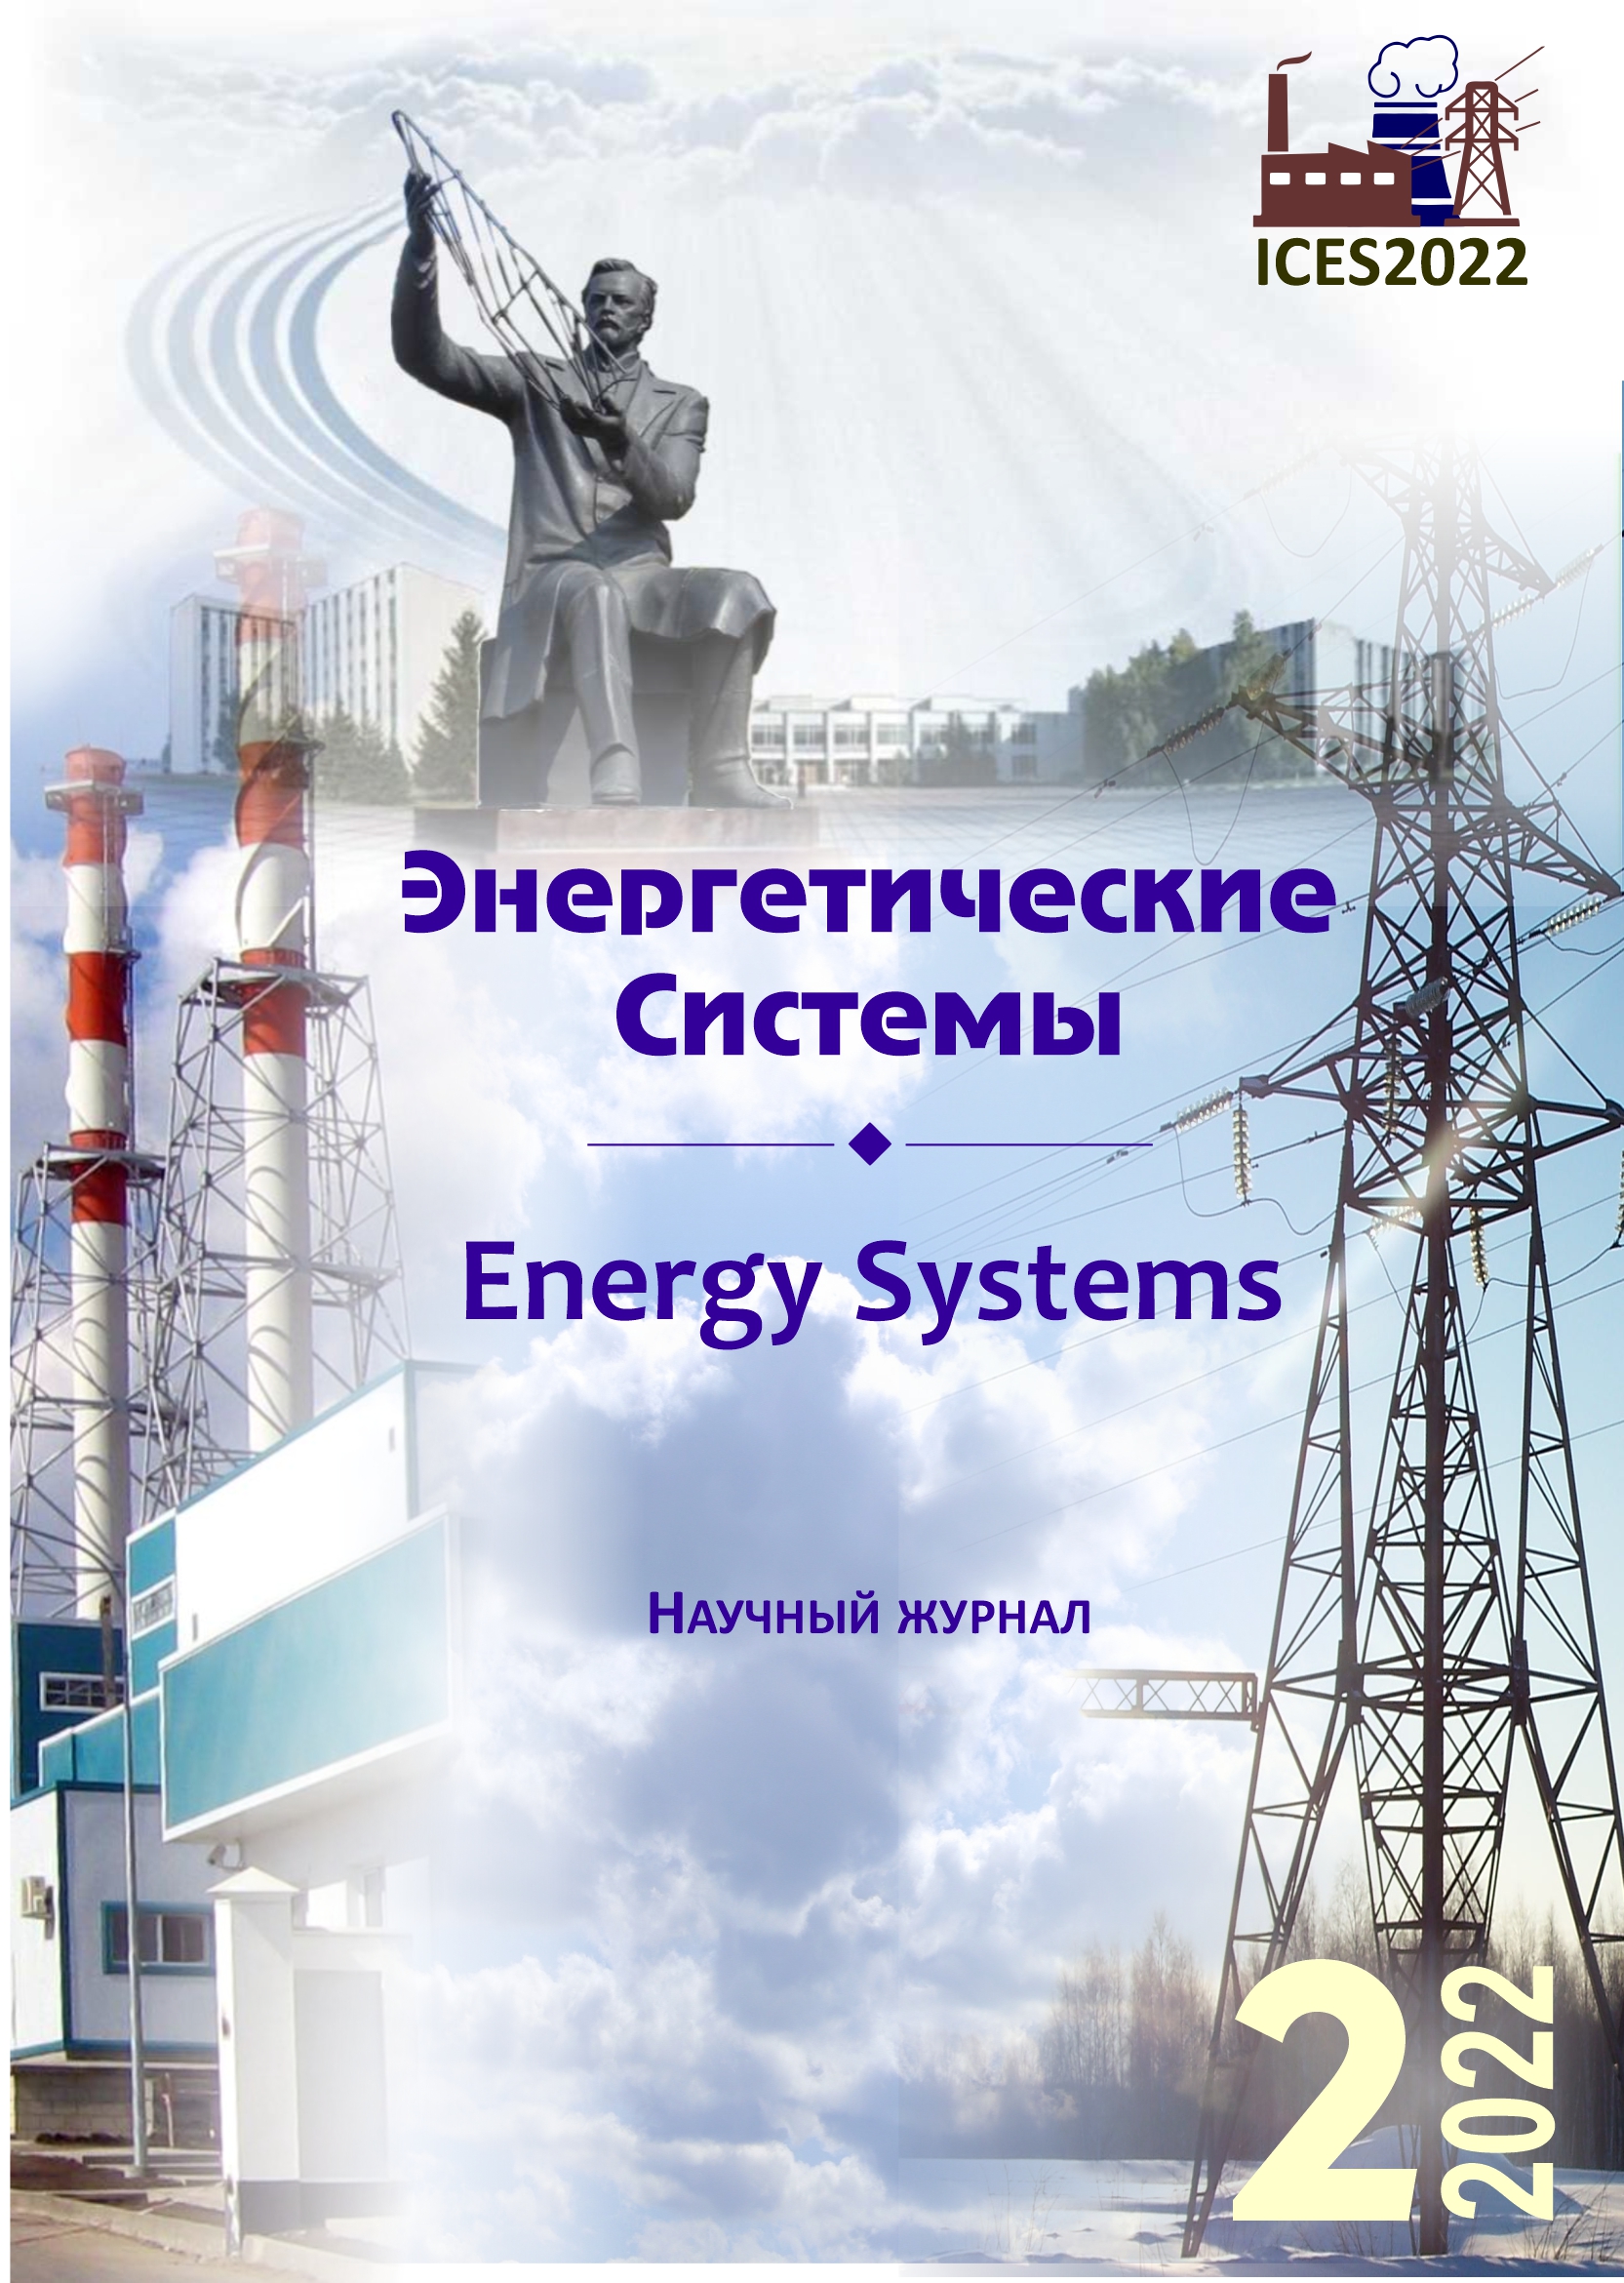 					Показать Том 7 № 2 (2022): VI международная научно-техническая конференция «Энергетические системы» (ICES-2022)
				